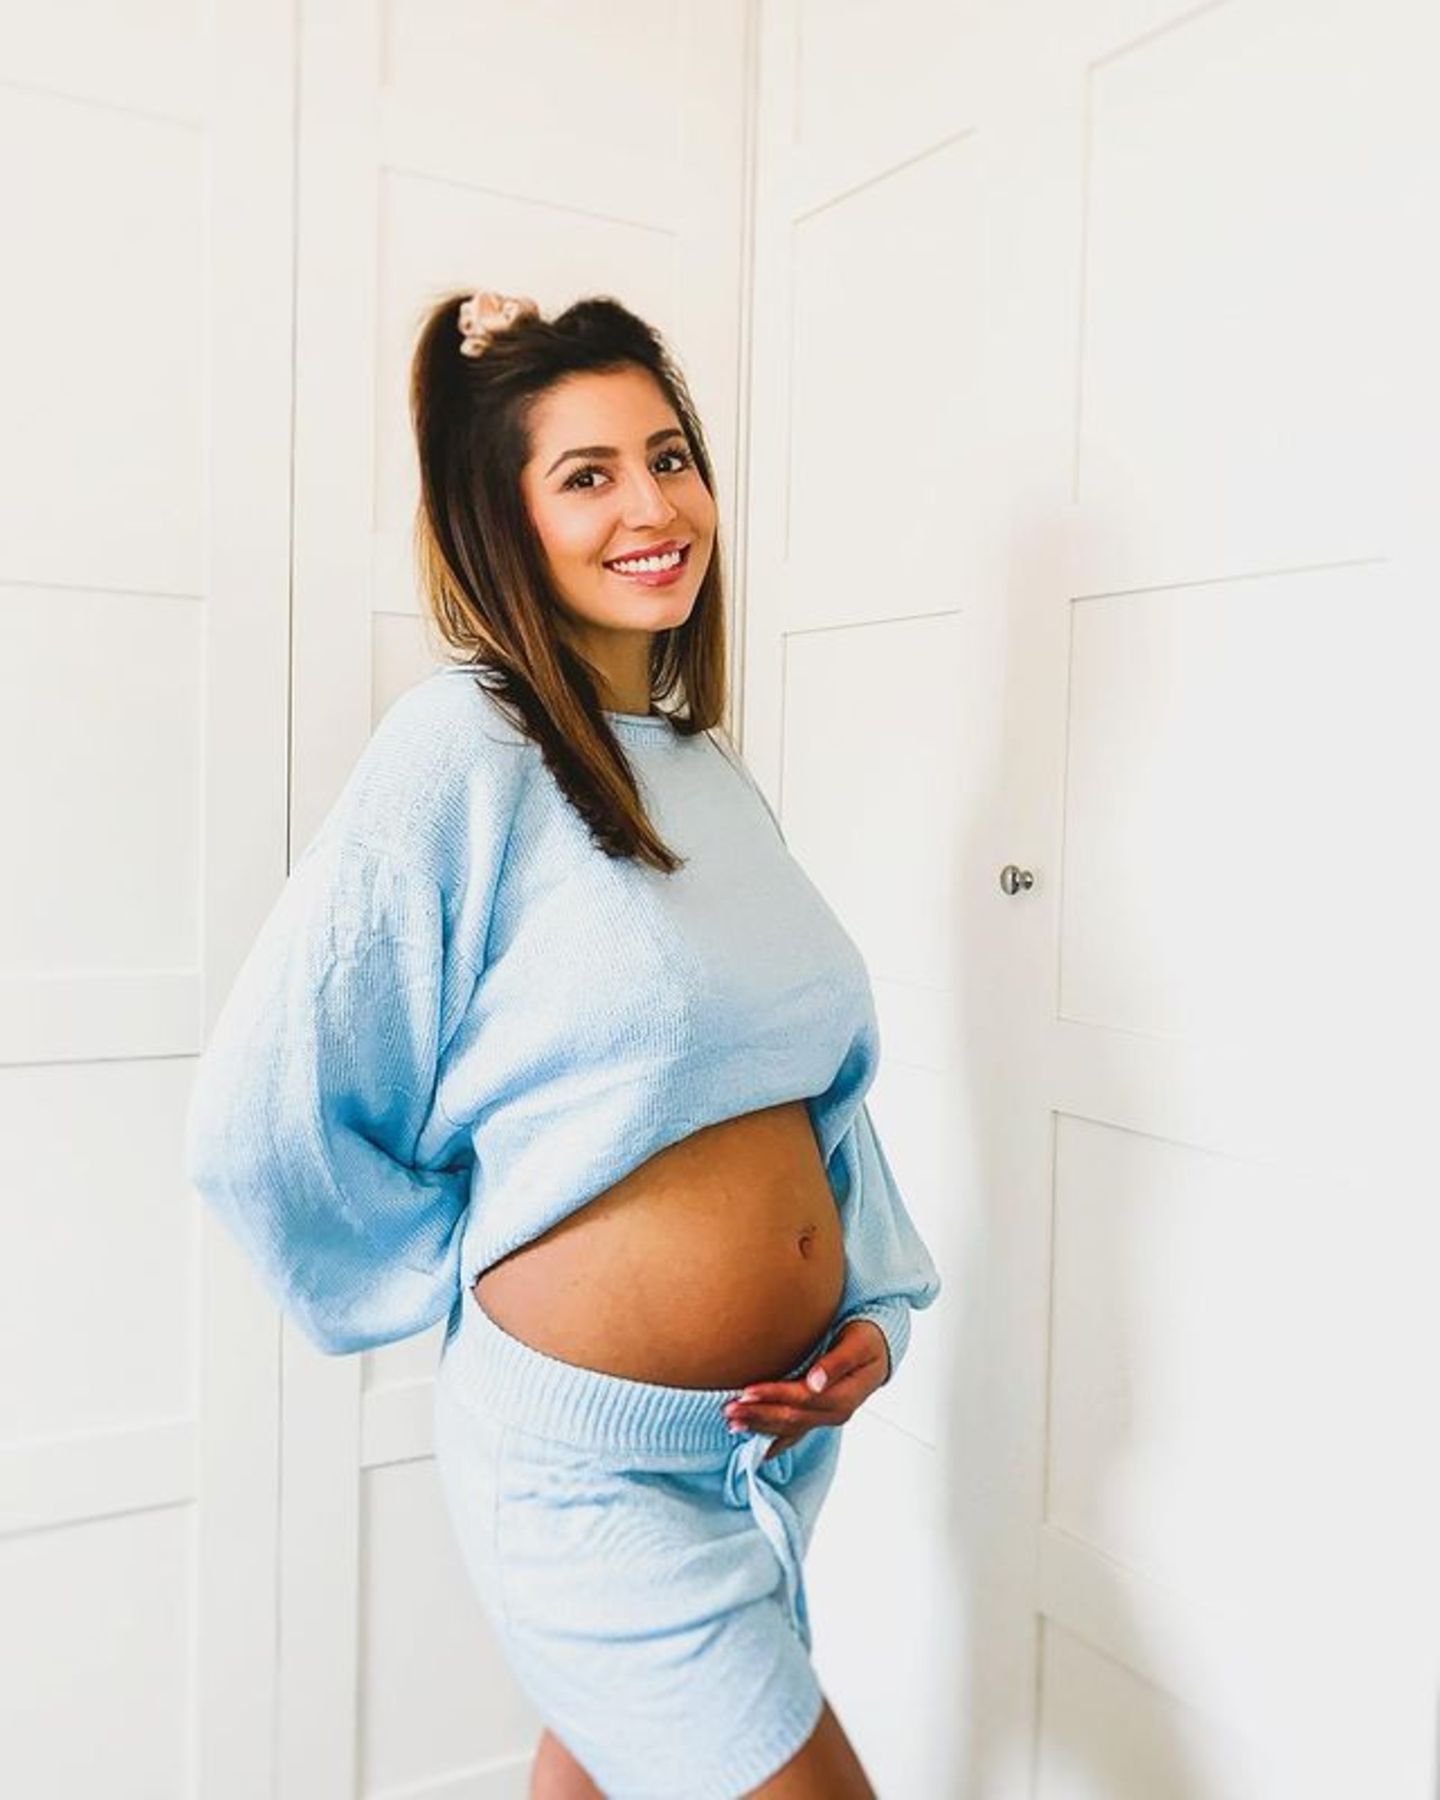 Da ist er! Eva Benetatou präsentiert ihren 170.000 Instagram-Followern ihr wachsendes Babybäuchlein. Damit bedankt sie sich für all die lieben Glückwünsche und Nachrichten, die sie von ihren Fans bekommen hat. In welchem Monat sie ist, hat Eva bisher für sich behalten, in dem Video, mit dem sie ihre Schwangerschaft verkündet hatte, war allerdings ein Ultraschallbild von Ende Dezember zu sehen. Rein rechnerisch dürfte die Bachelor-Kandidatin von 2019 damit also etwa im fünften Monat sein. 